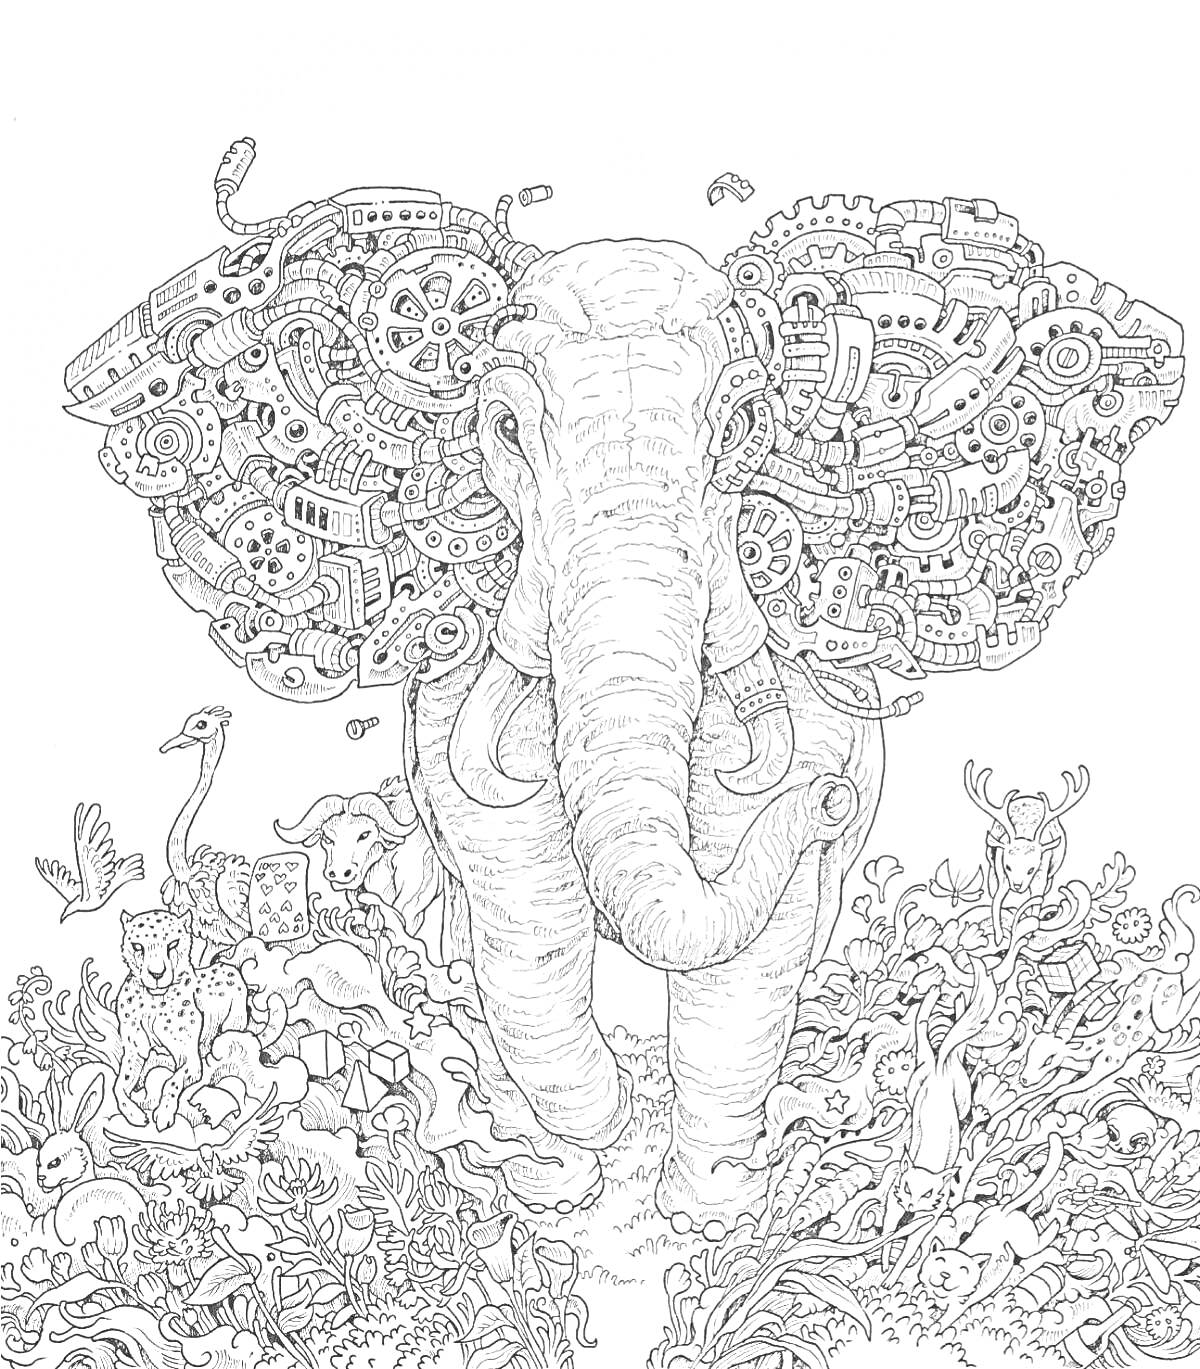 Раскраска слон с ушами из шестеренок и механизмов, окружённый животными и растительностью